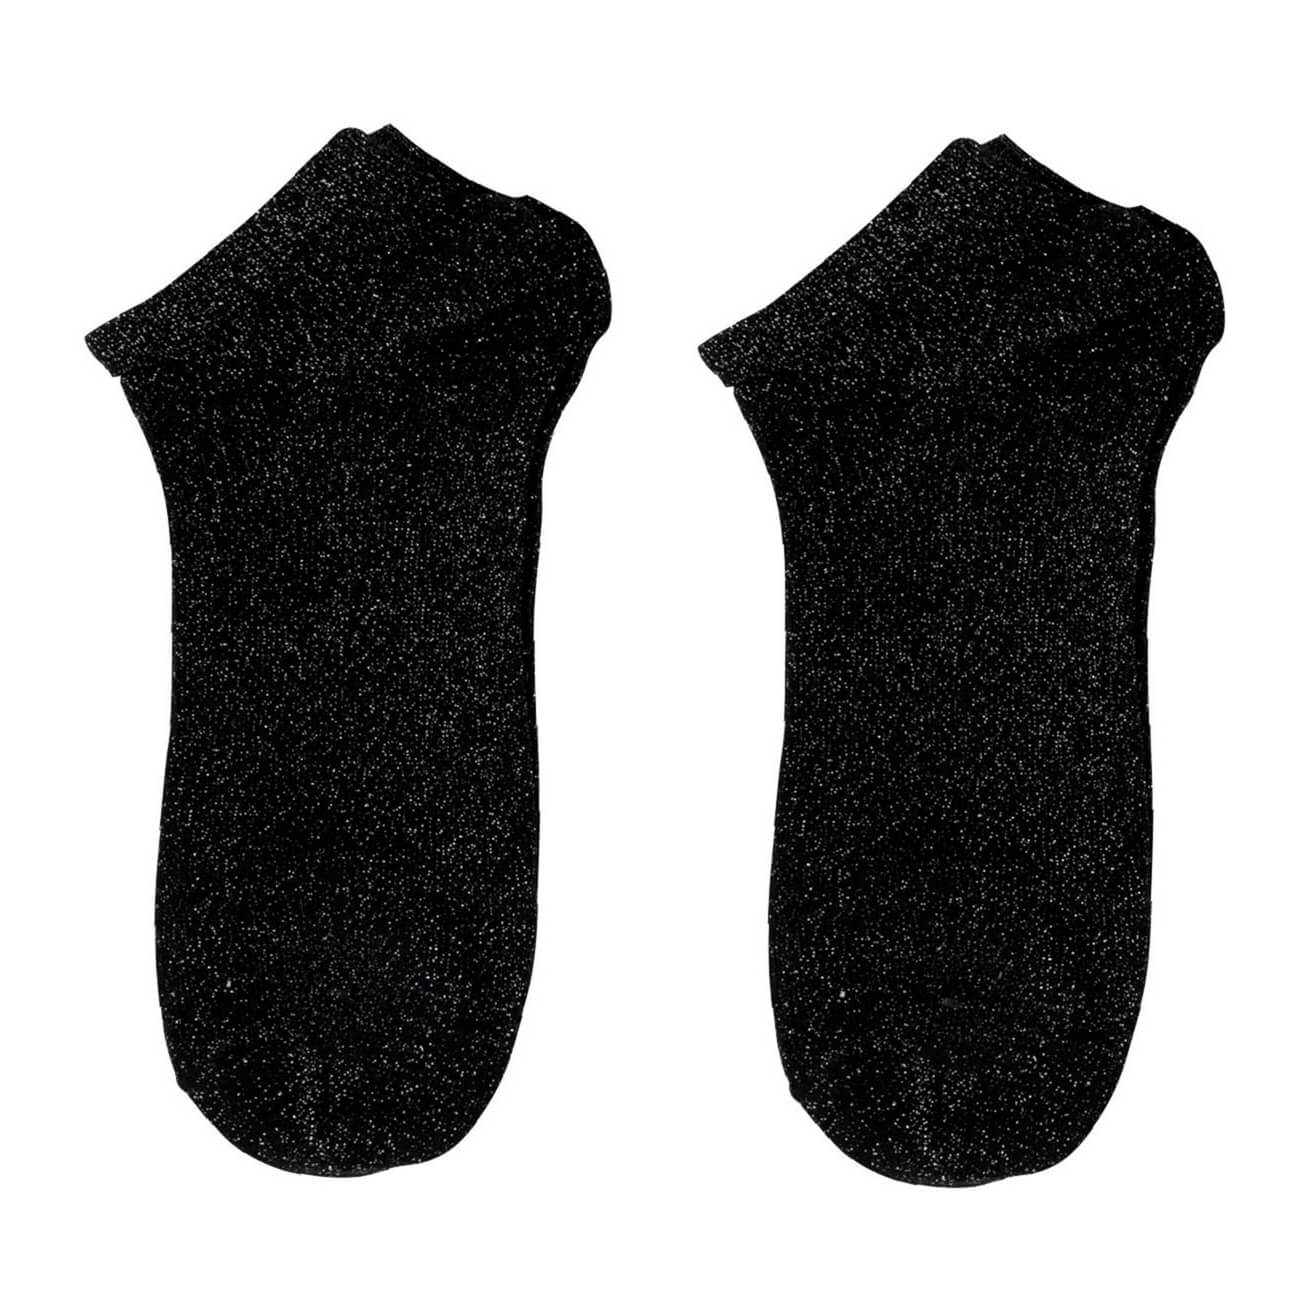 Носки женские, р. 36-38, хлопок/полиэстер, черные, Glint носки следки женские р 36 38 хлопок полиэстер черные basic